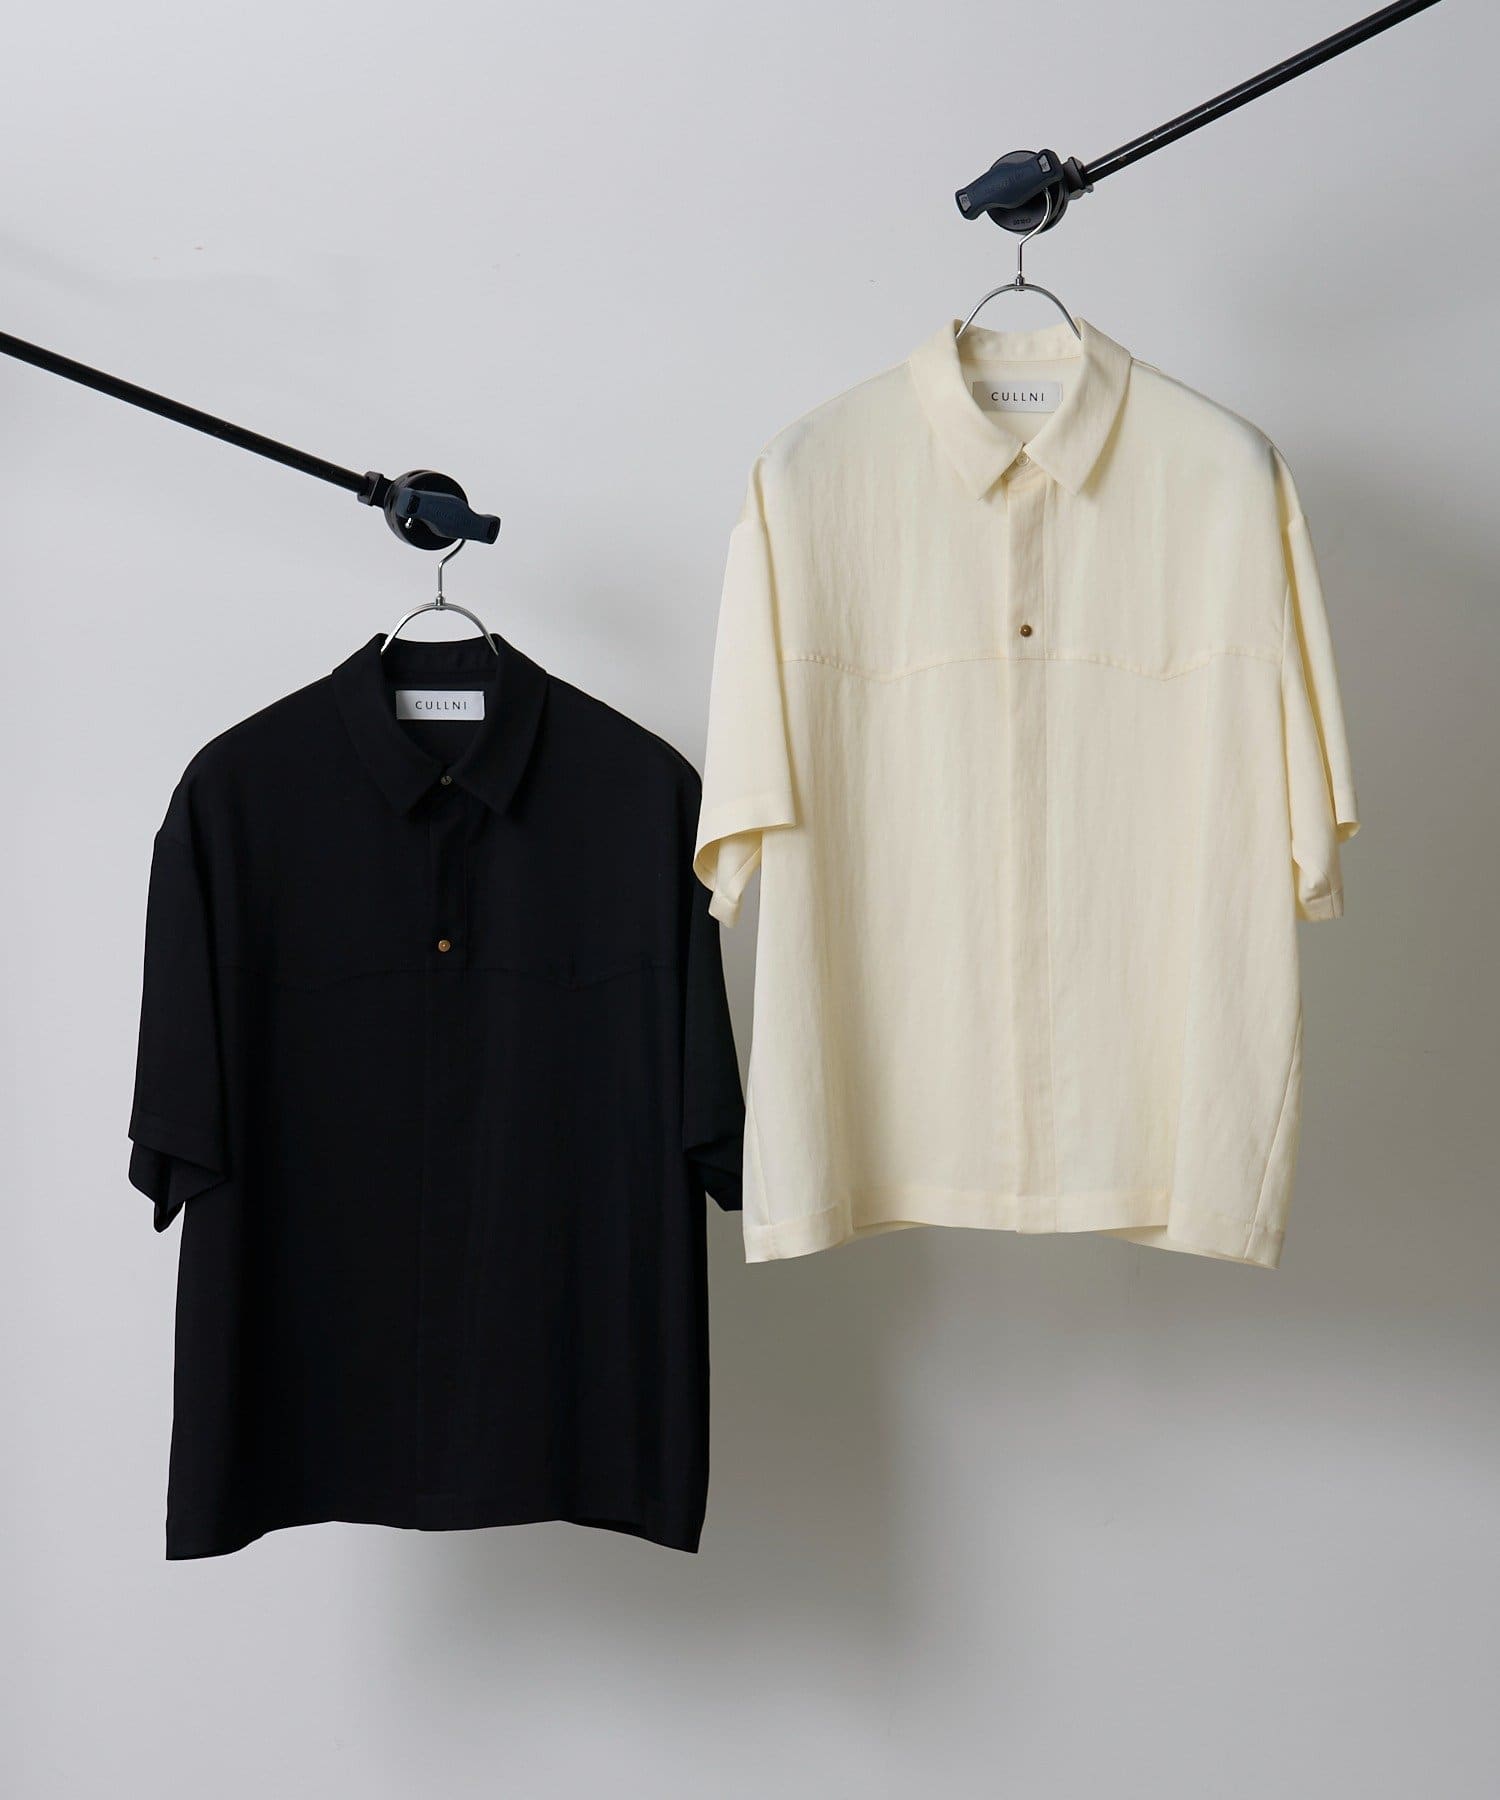 CULLNI】24SS exclusive ウエスタンデザインシャツ | Lui's(ルイス ...